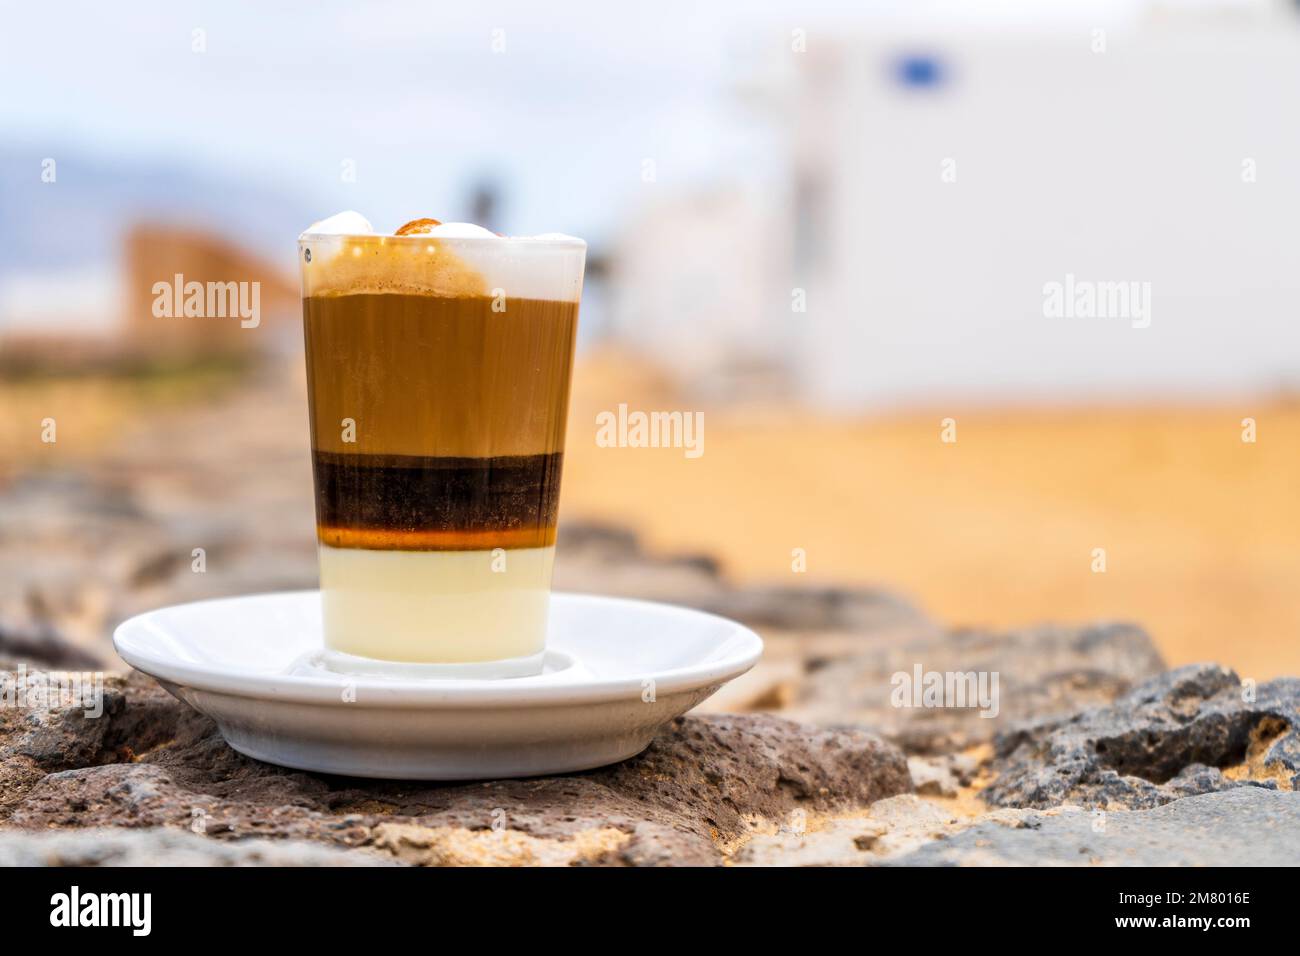 Délicieux café barraquito avec liqueur et lait condensé, typique de l'île des Canaries, la Graciosa, Espagne Banque D'Images